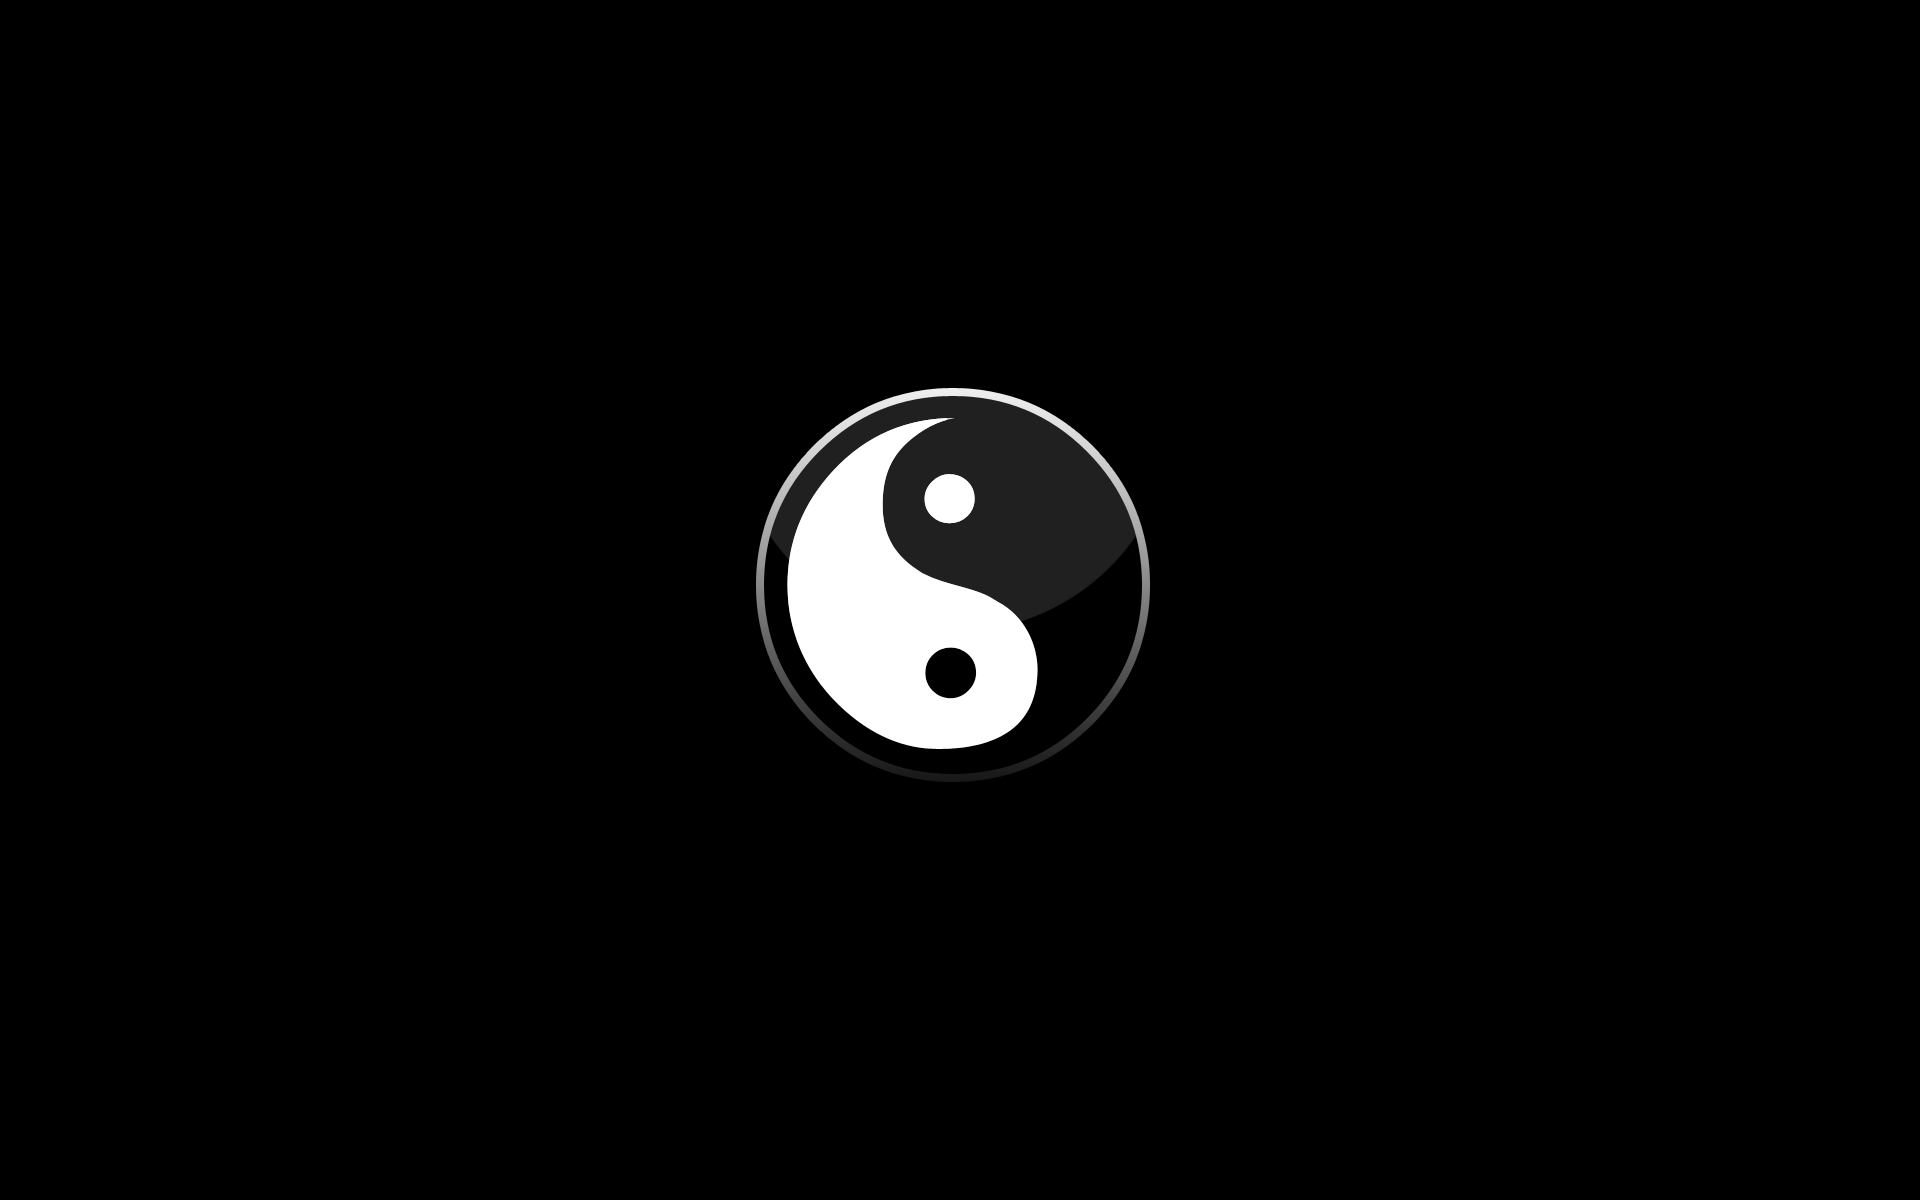 yin yang wallpaper hd, yin yang images free download